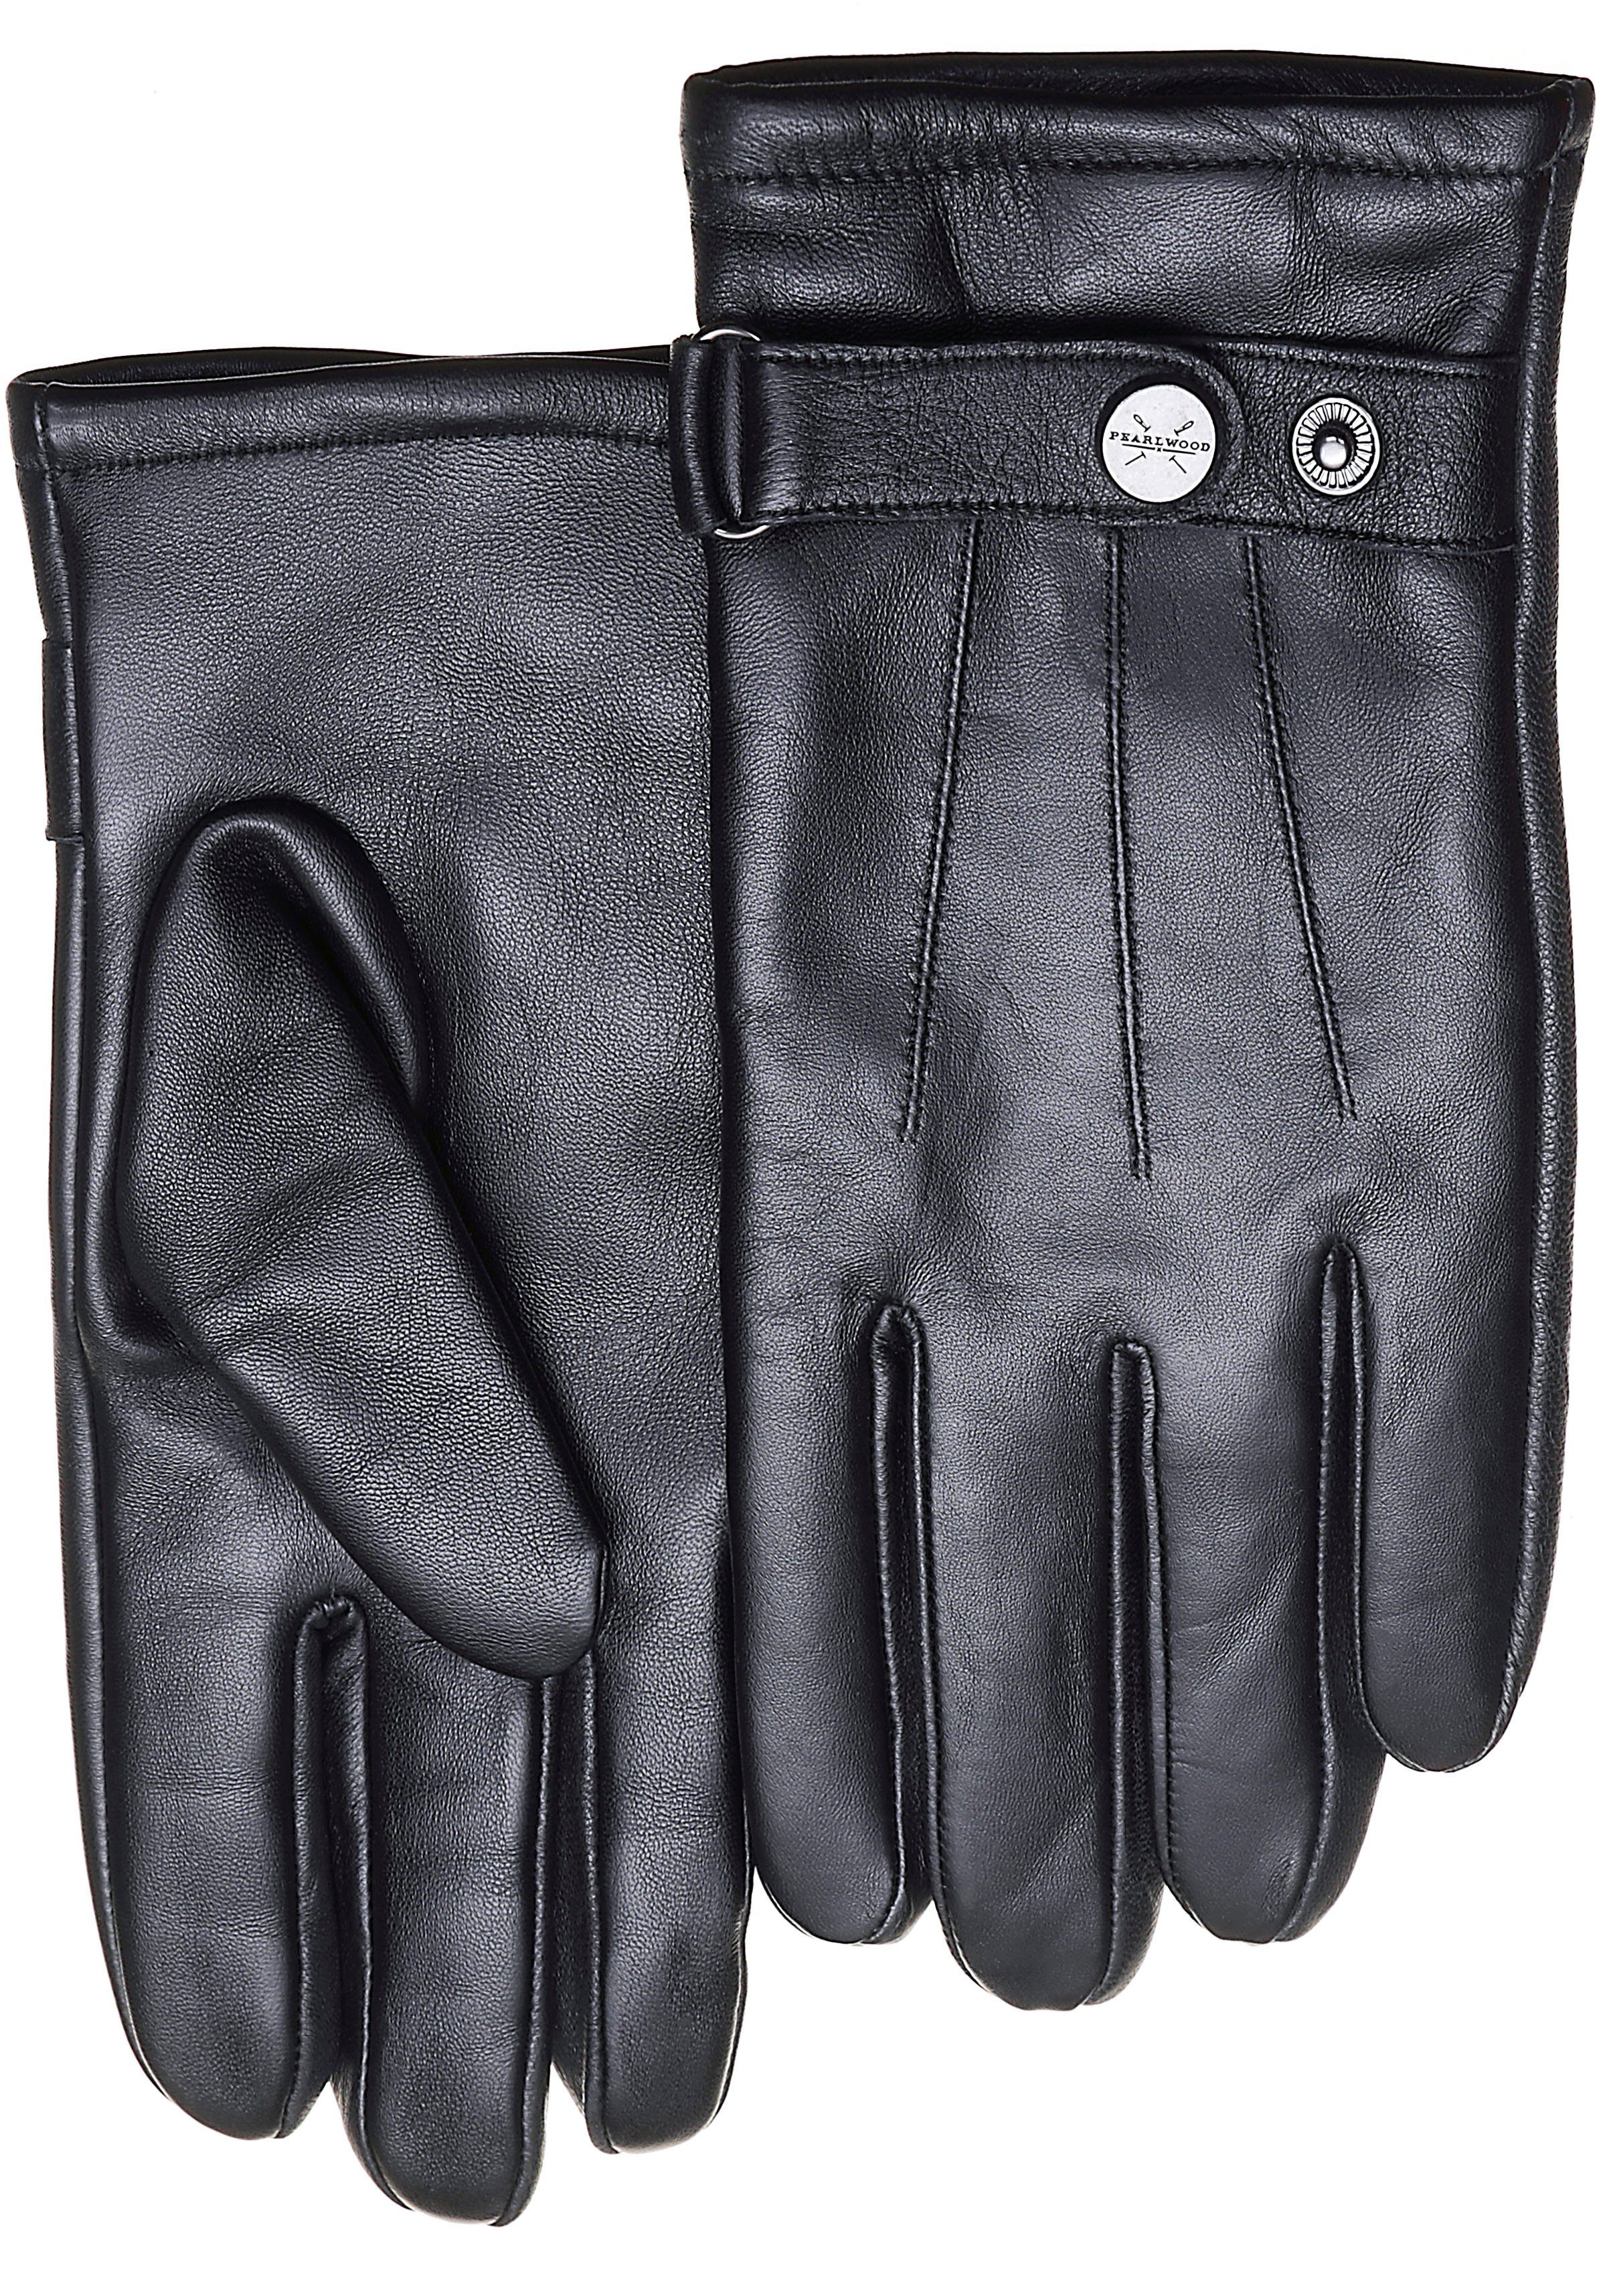 PEARLWOOD Lederhandschuhe Porter Atmungsaktiv, Wärmeregulierend, Wind - und Wasserabweisend | Handschuhe